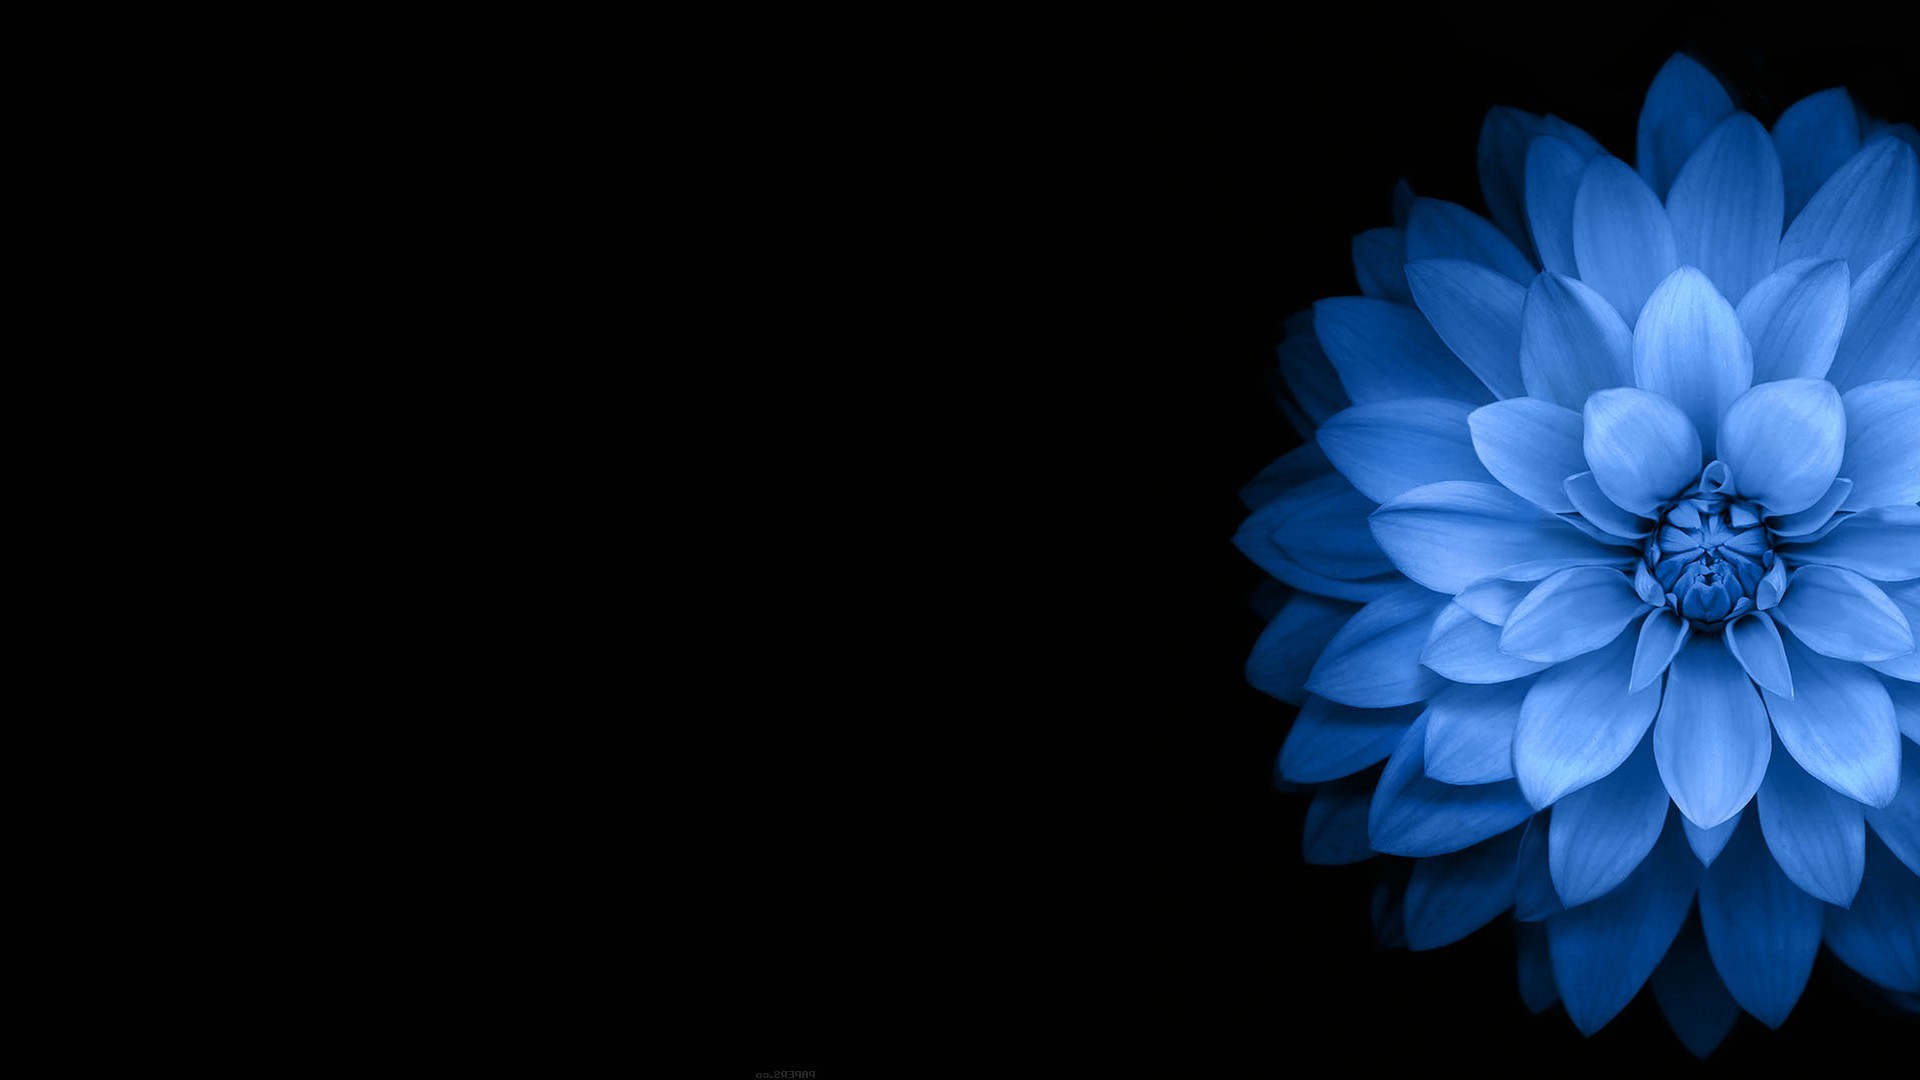  flowers  Blue Black  Dark Wallpapers  HD Desktop and 